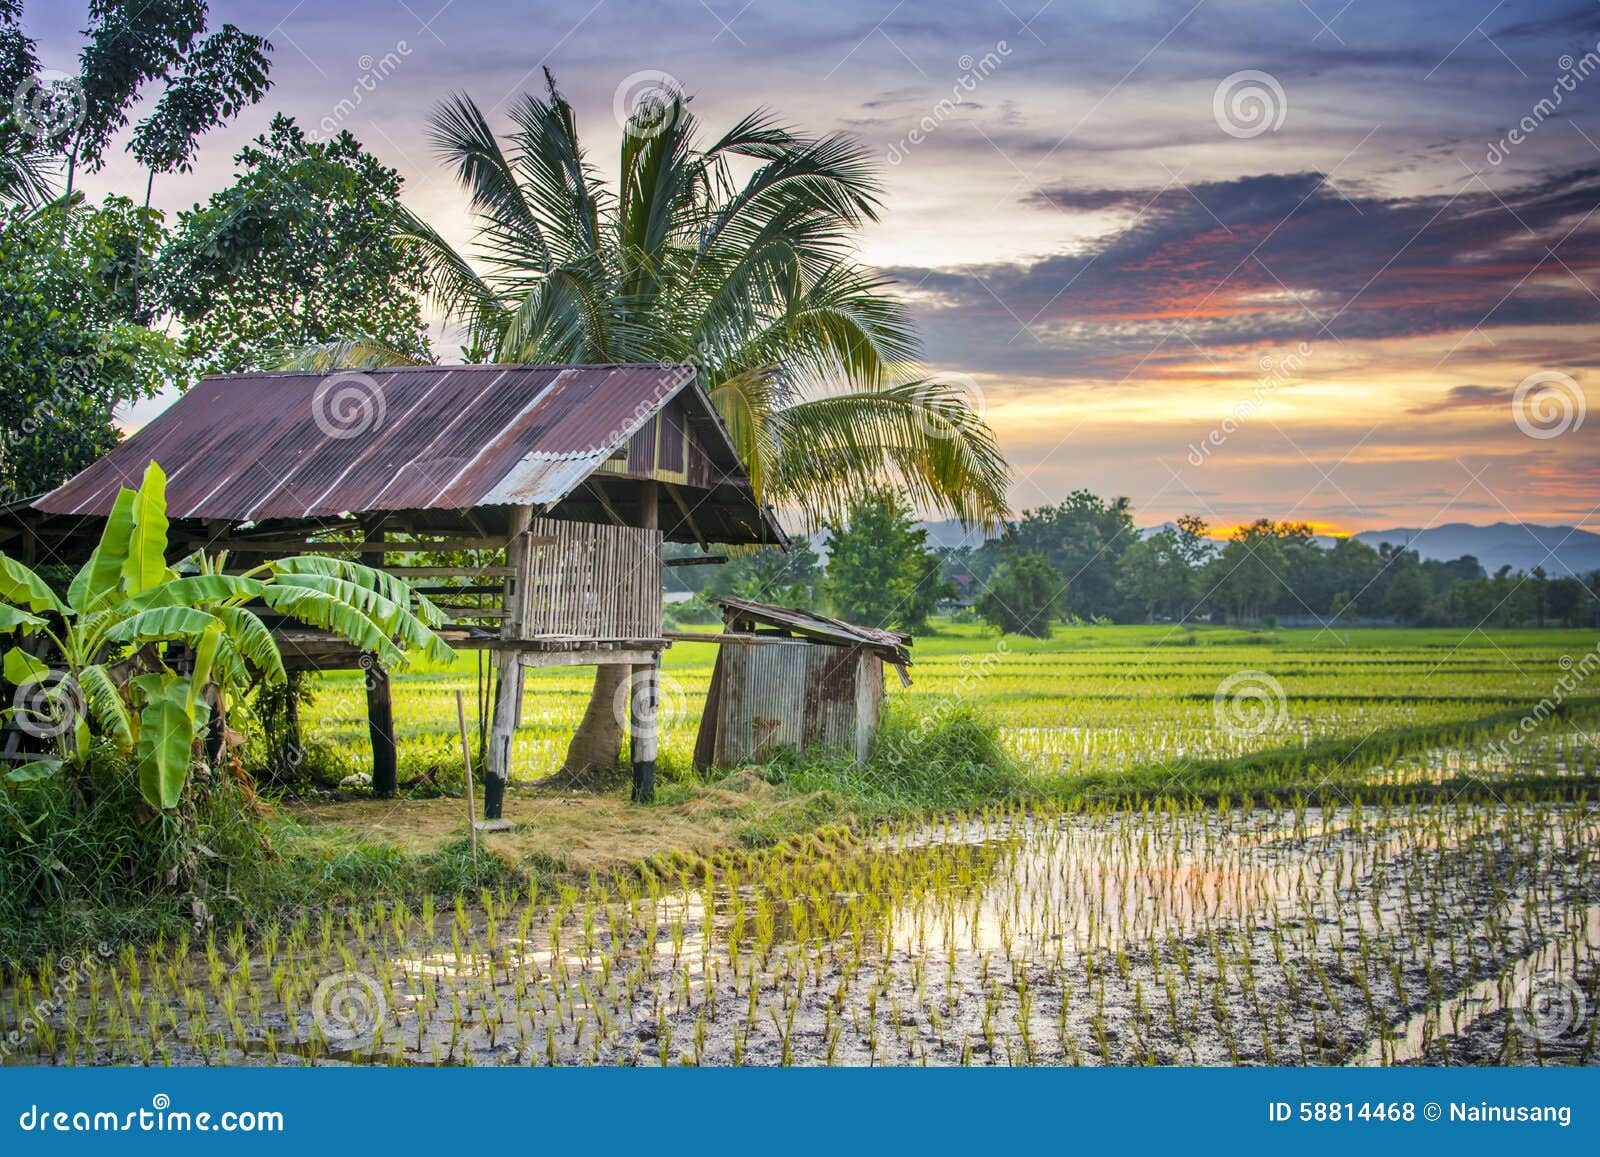 thailand farm